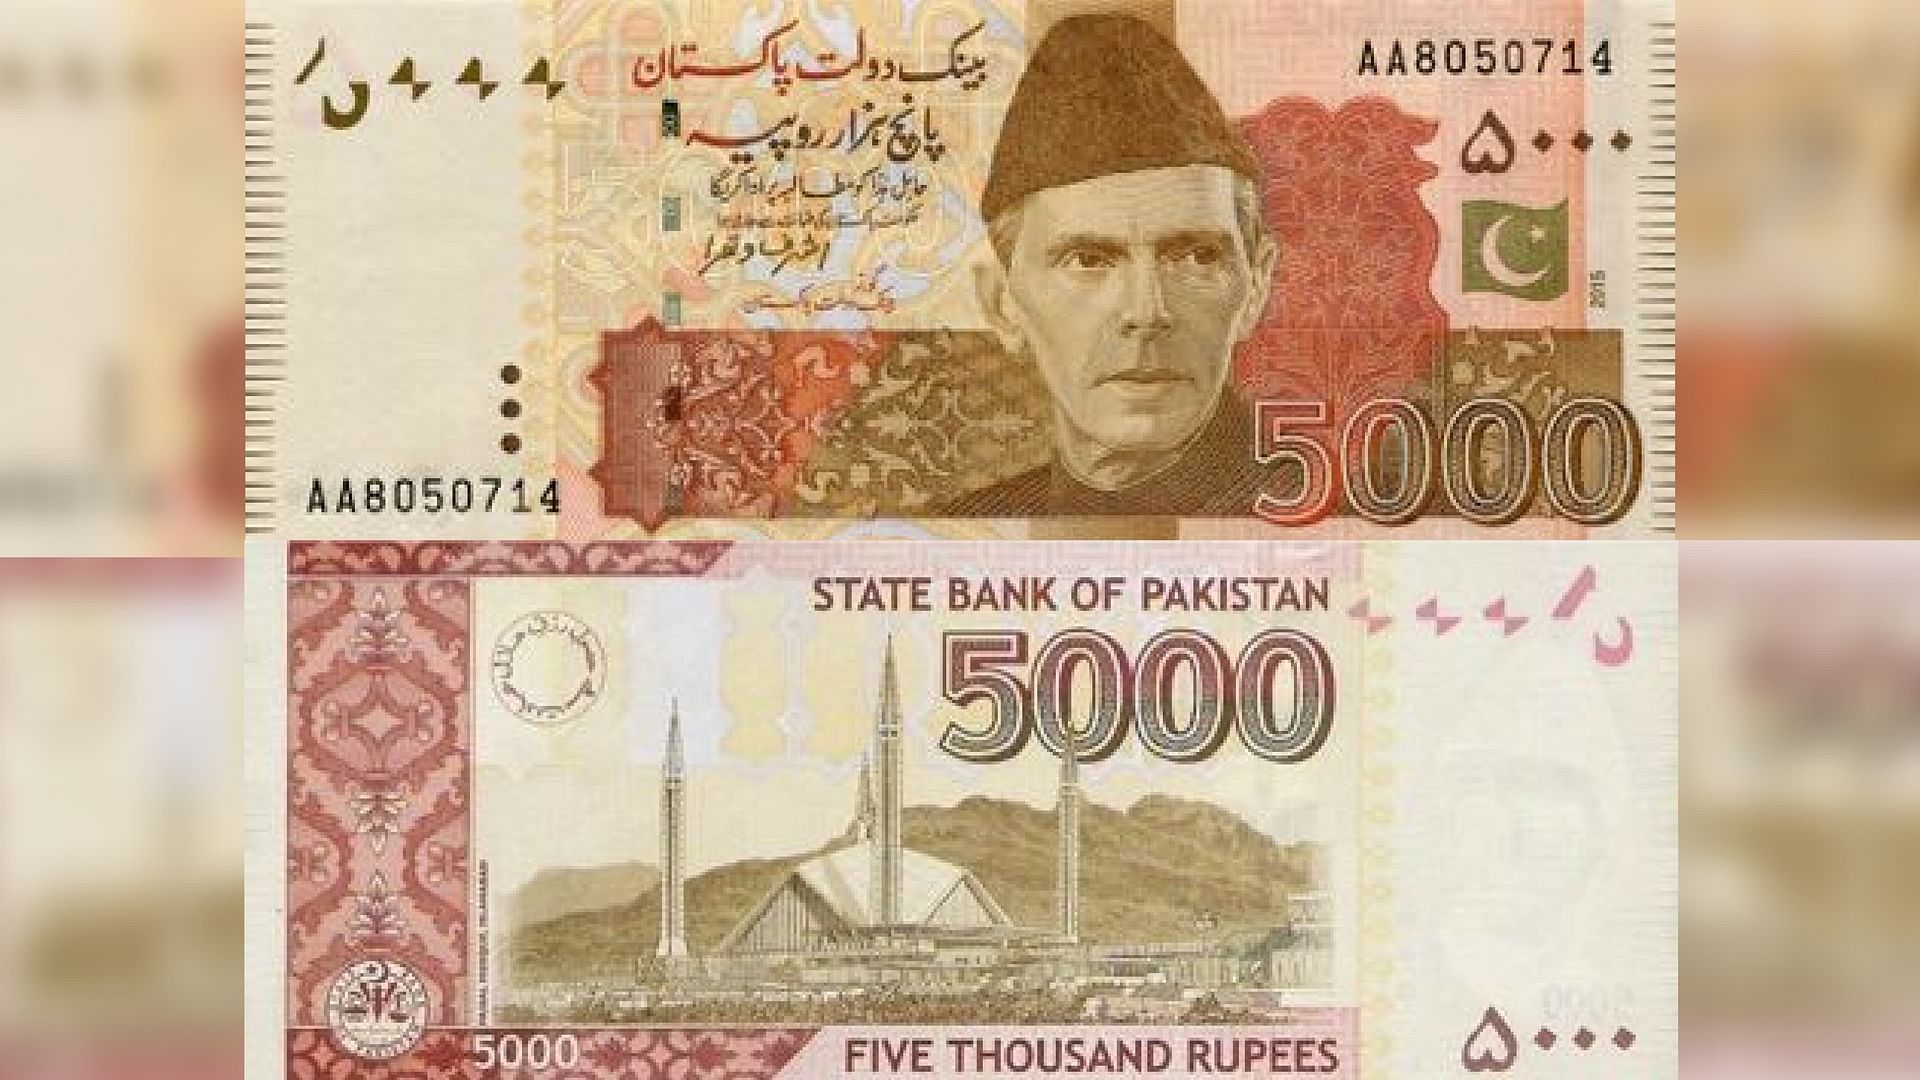 

पाकिस्तान की संसद ने काले धन और भ्रष्टाचार पर लगाम लगाने के लिए 5000 रुपये के नोट को बंद करने का प्रस्ताव पारित किया&nbsp;